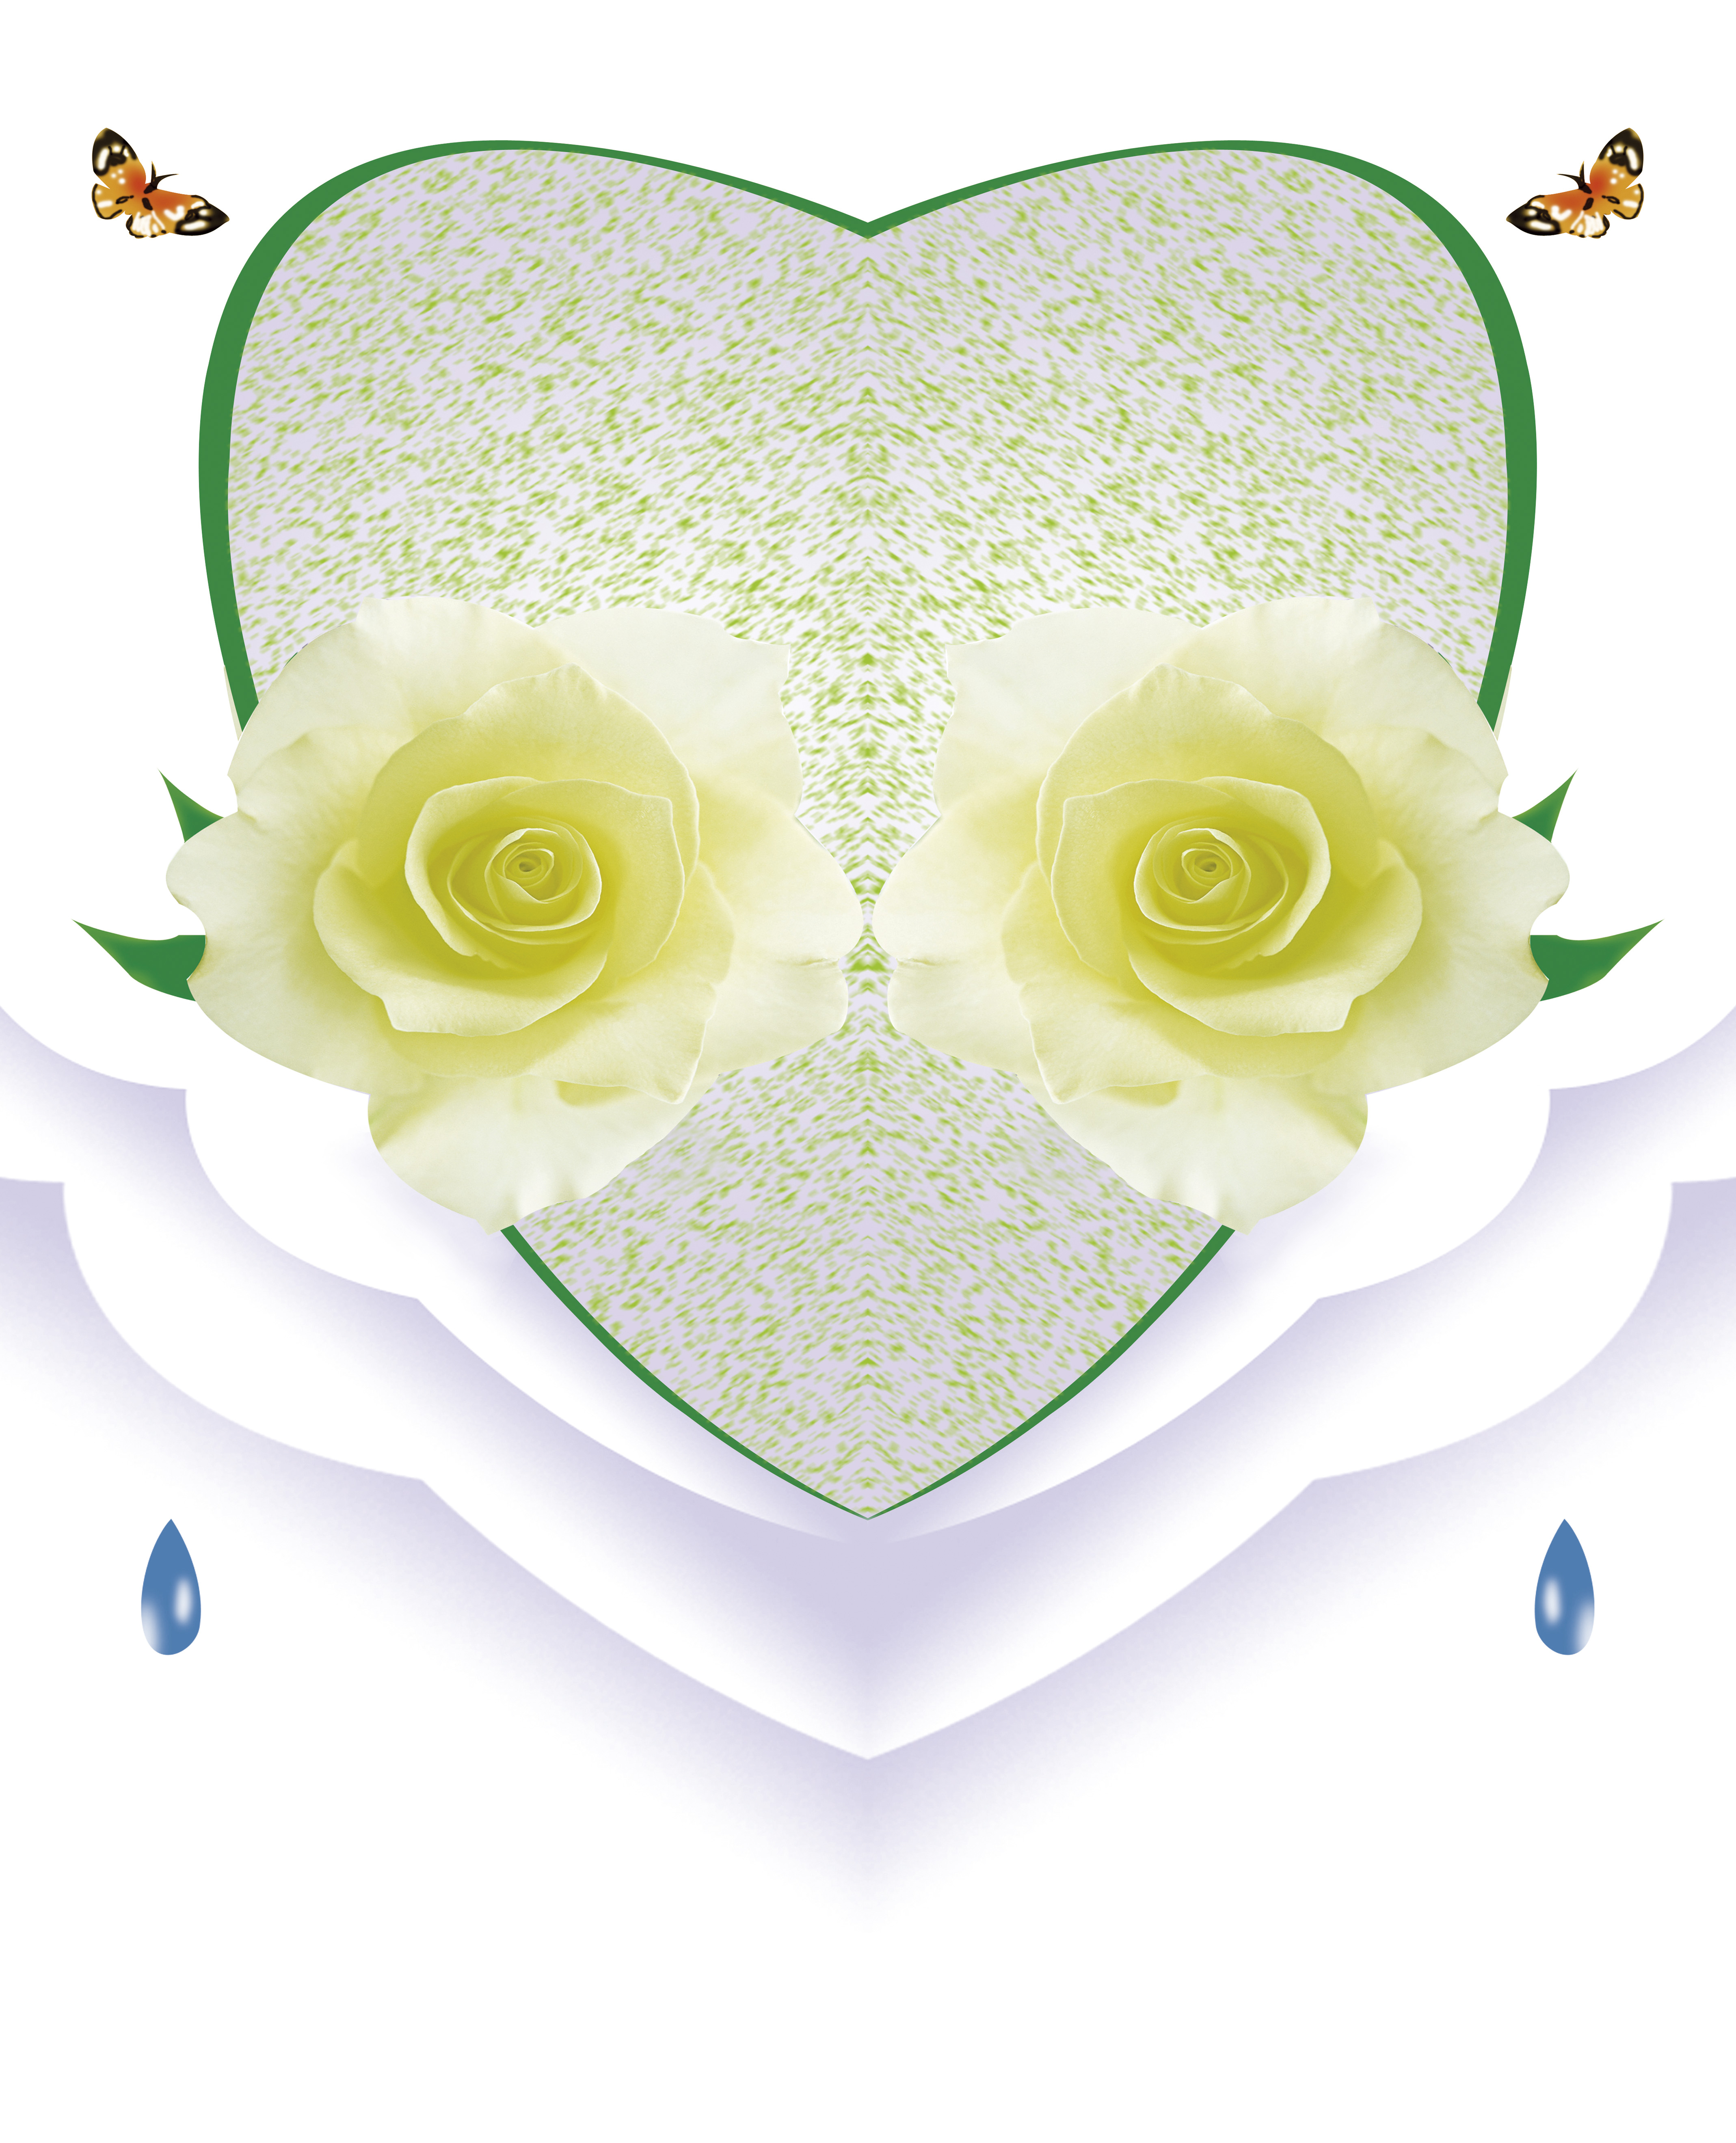  移门图 雕刻路径 橱柜门板  HXA-052 艺术玻璃 移门，强化，华湘，HXA-052，玫瑰，黄玫瑰，花朵，蝴蝶，心形